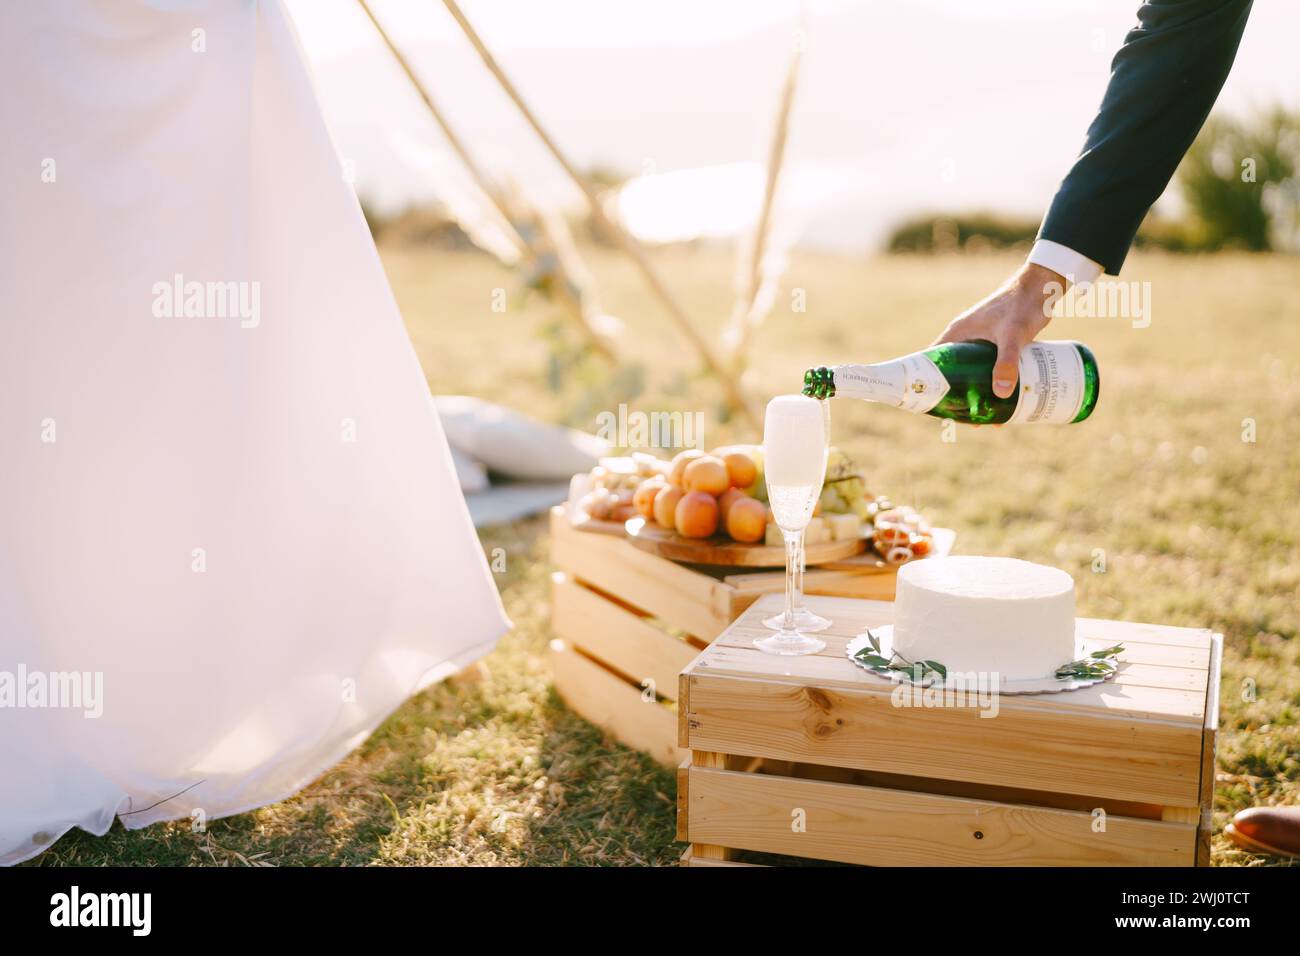 Der Bräutigam gießt Champagner in Gläser auf einer Holzkiste mit einem Kuchen neben der Braut. Abgeschnitten Stockfoto